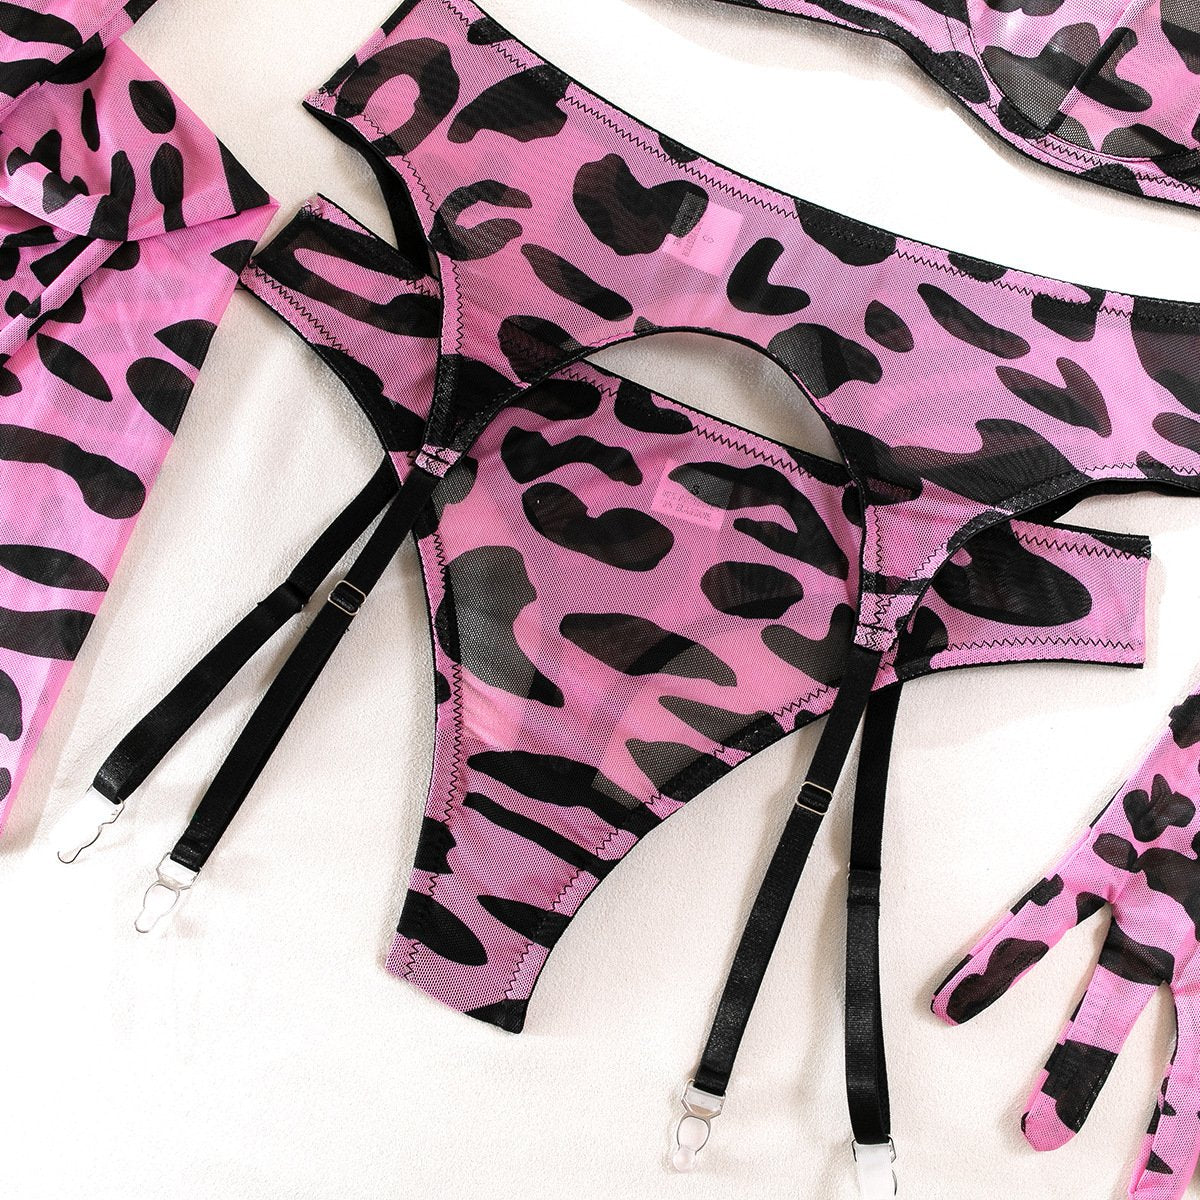 Leopard print gloves sheer mesh garter lingerie set